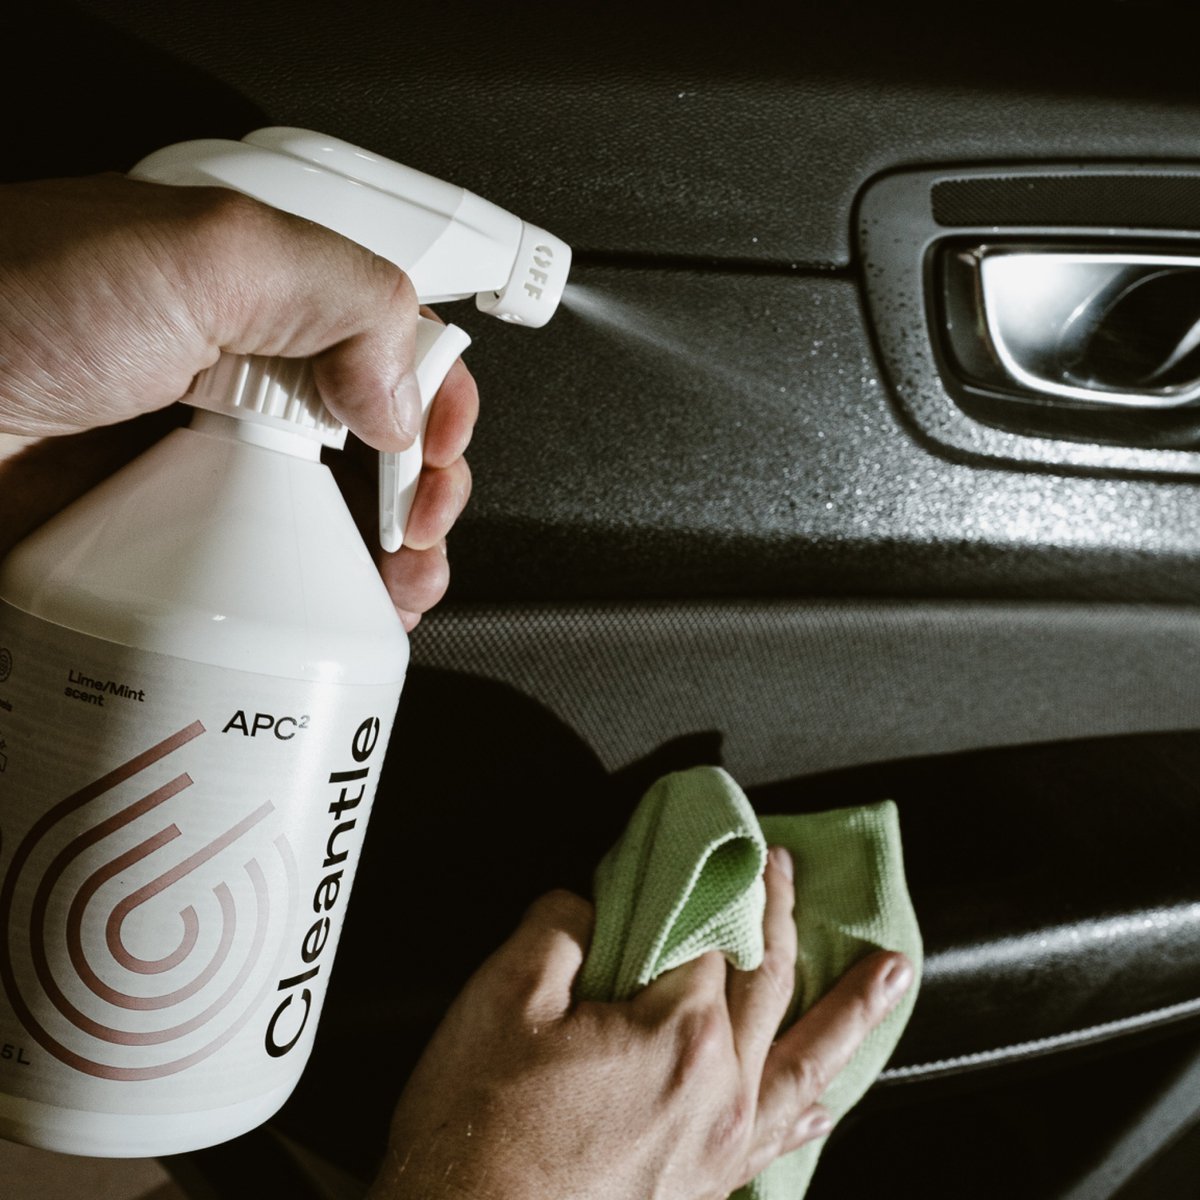 Cleantle APC 500ml (Lime/Mint) - nettoyant voiture tout usage